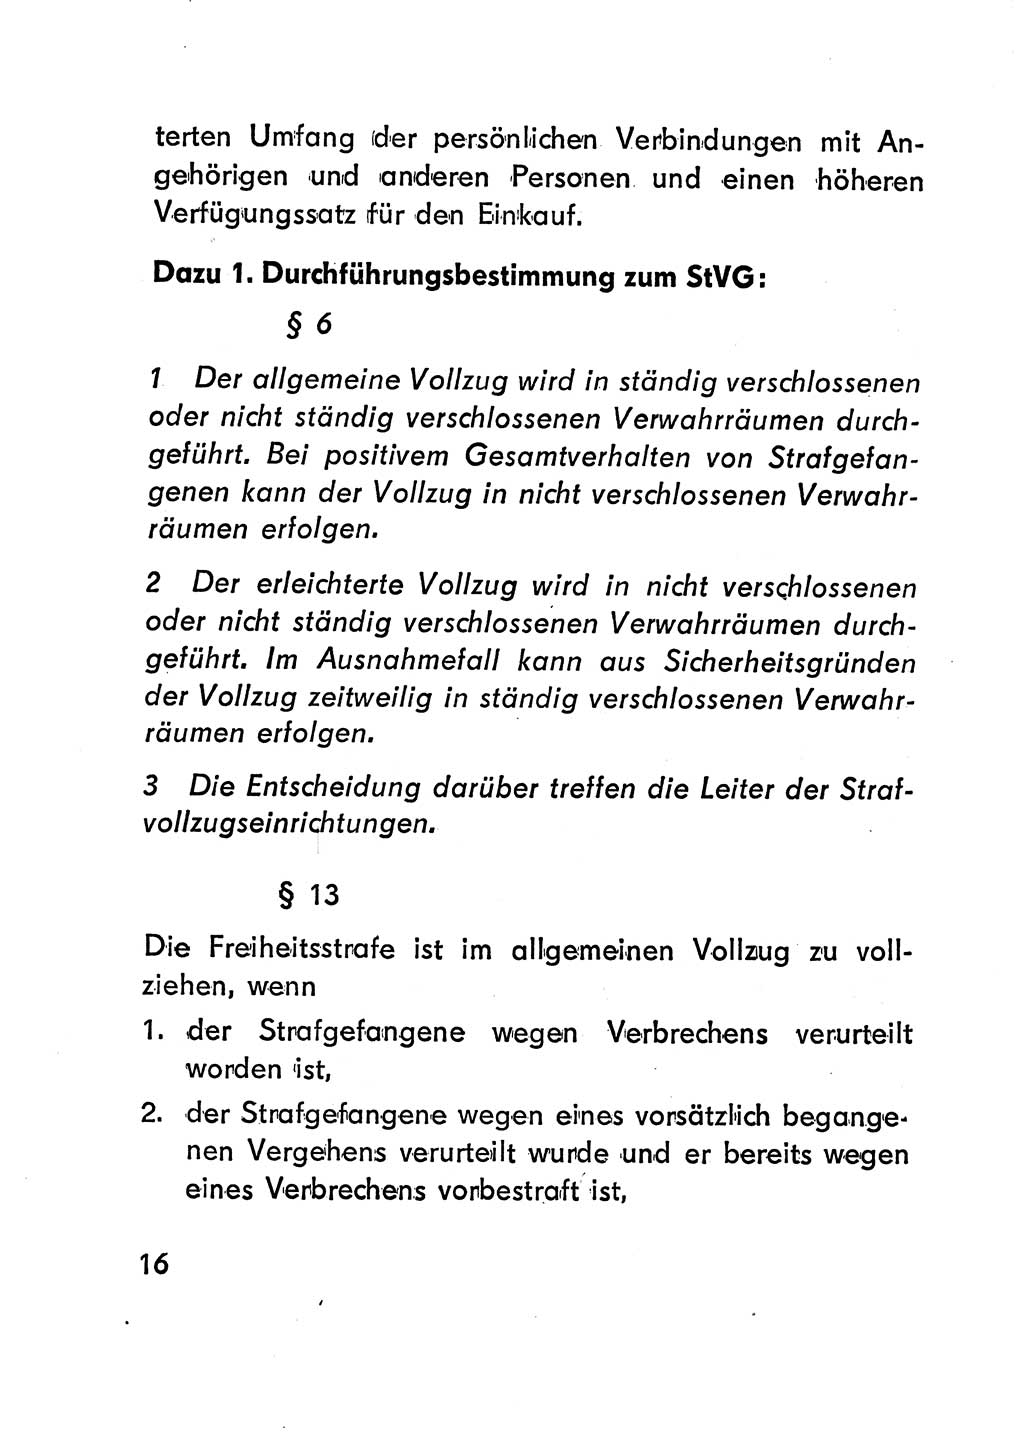 Gesetz über den Vollzug der Strafen mit Freiheitsentzug (Strafvollzugsgesetz) - StVG - [Deutsche Demokratische Republik (DDR)] 1977, Seite 16 (StVG DDR 1977, S. 16)